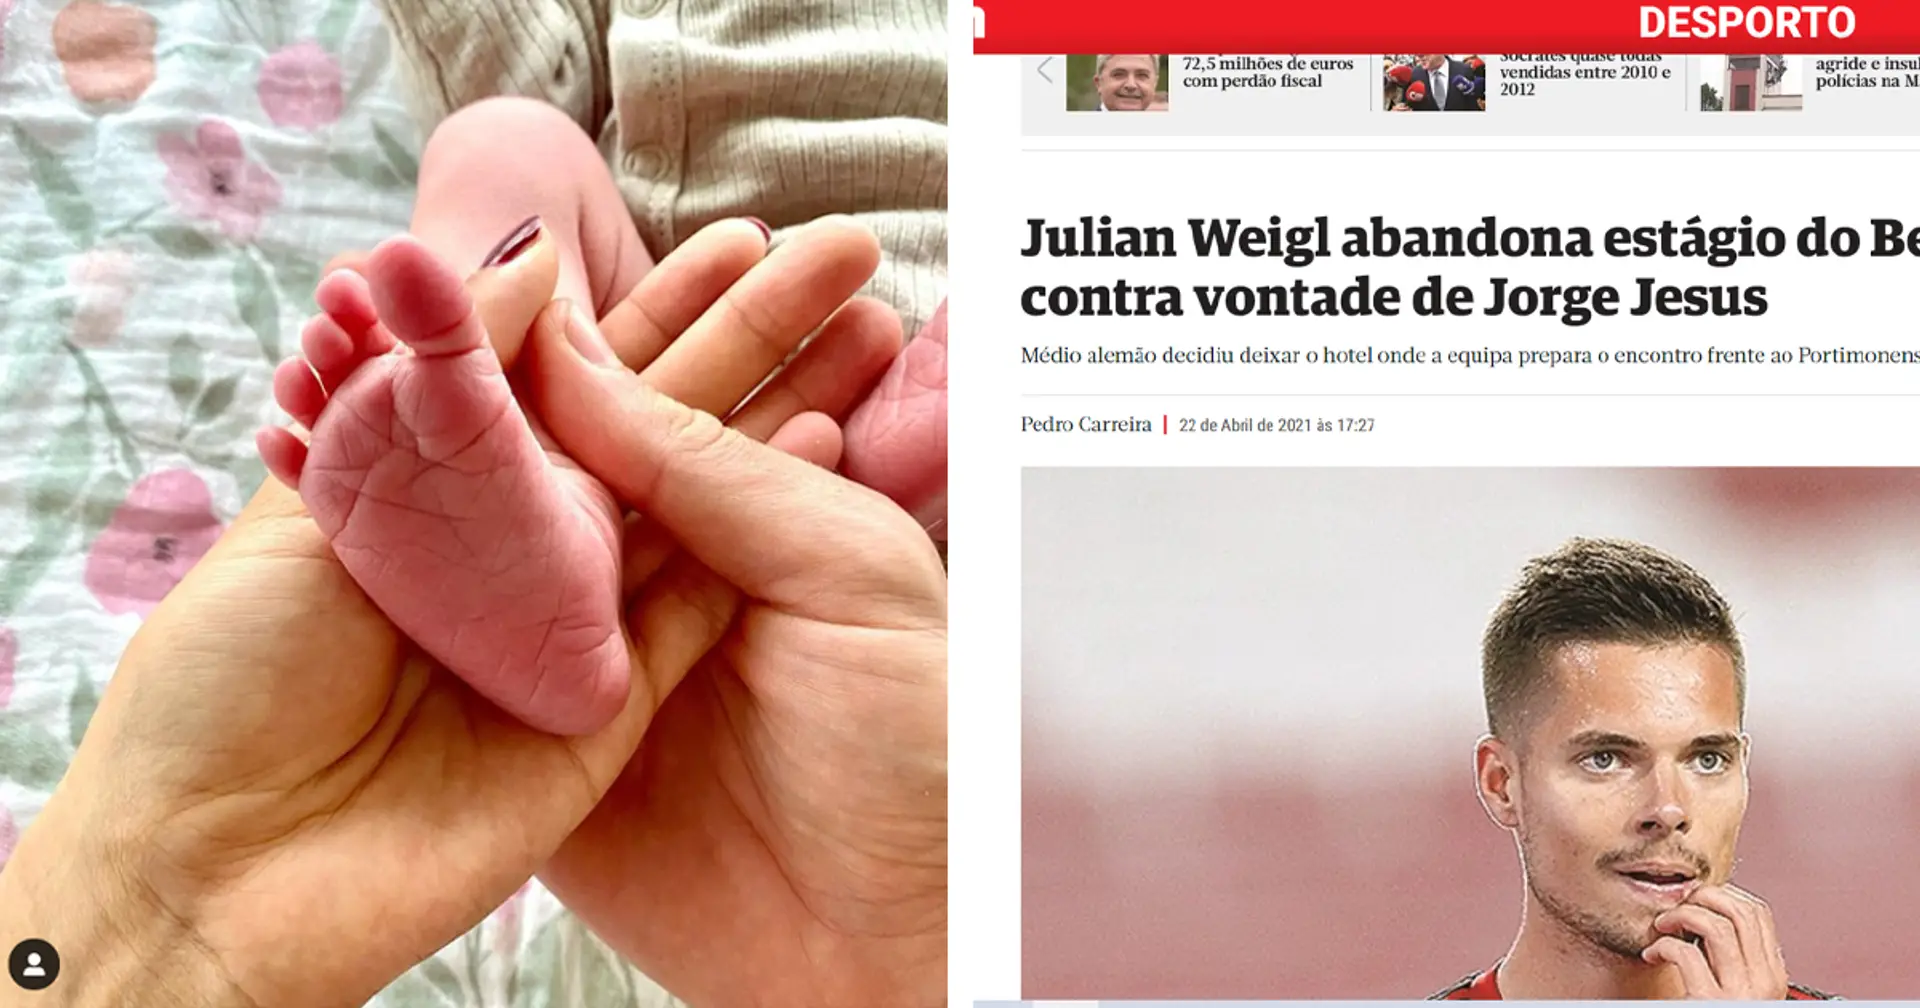 Julian Weigl wird Papa: Medien suchen nach Skandal und werfen ihm das Verlassen des Trainingslagers vor